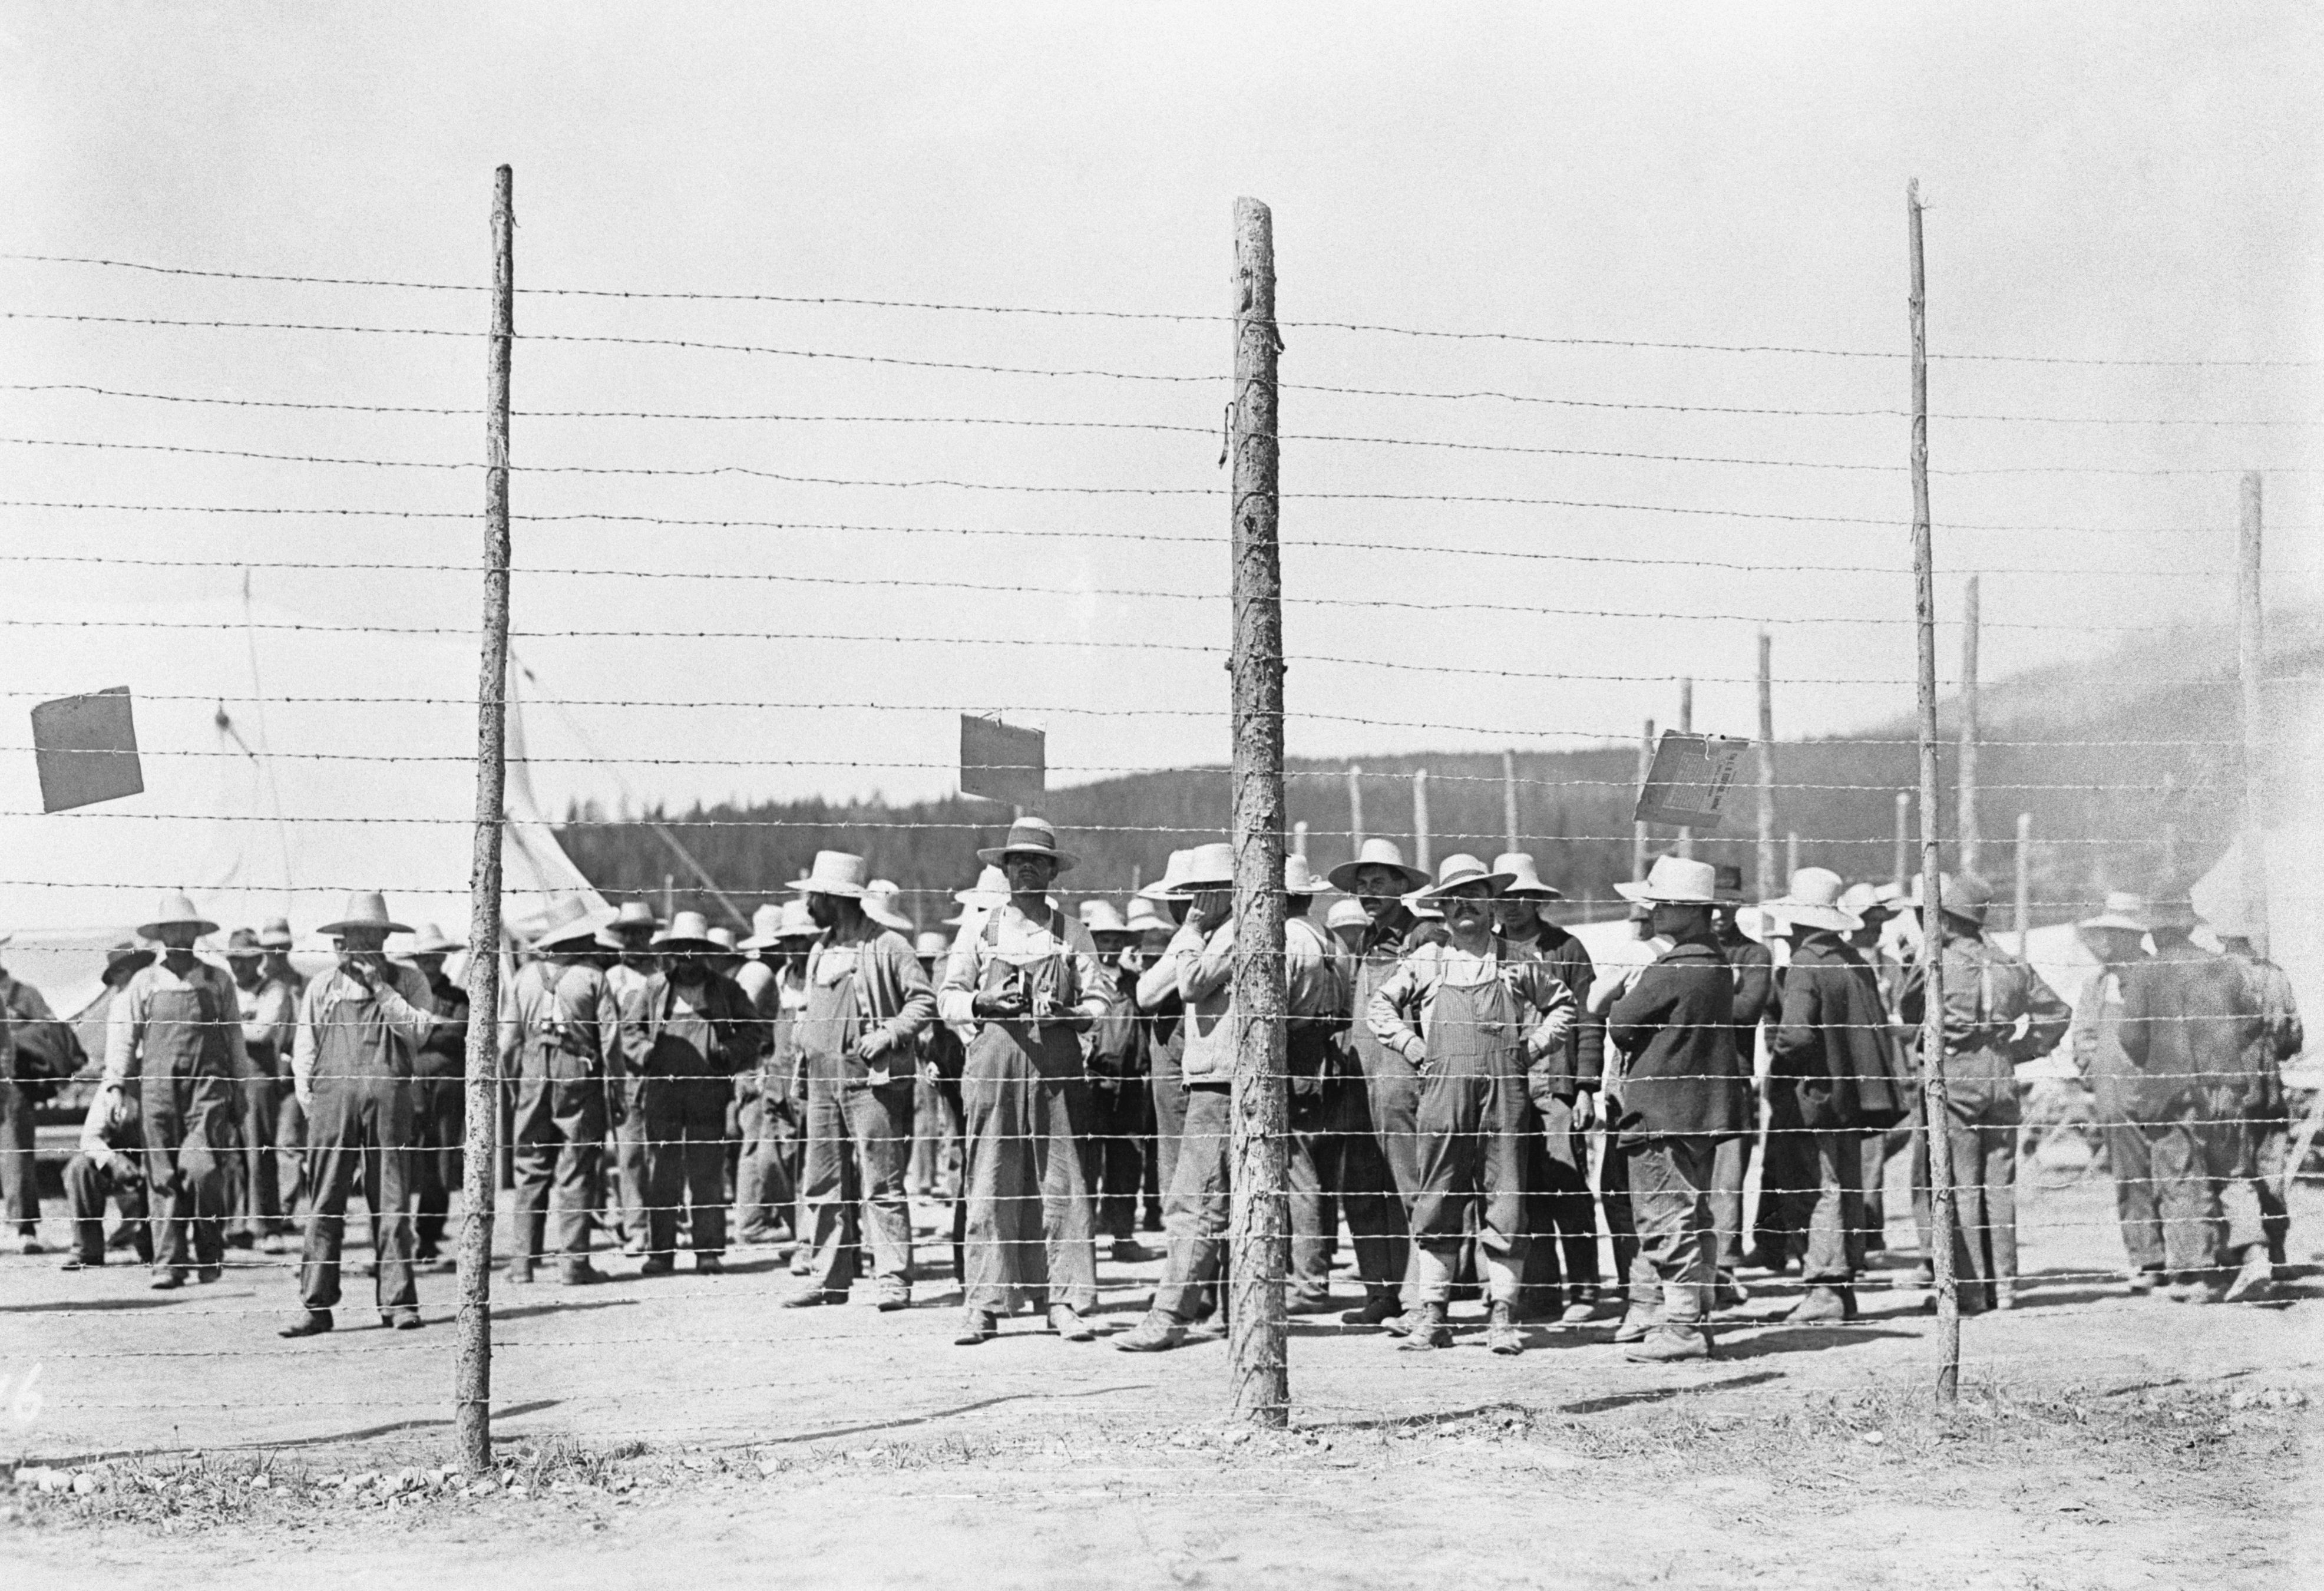 Photographie en noir et blanc d’hommes derrière une clôture de barbelés.//Black-and-white photograph of men behind a barbed-wire fence.